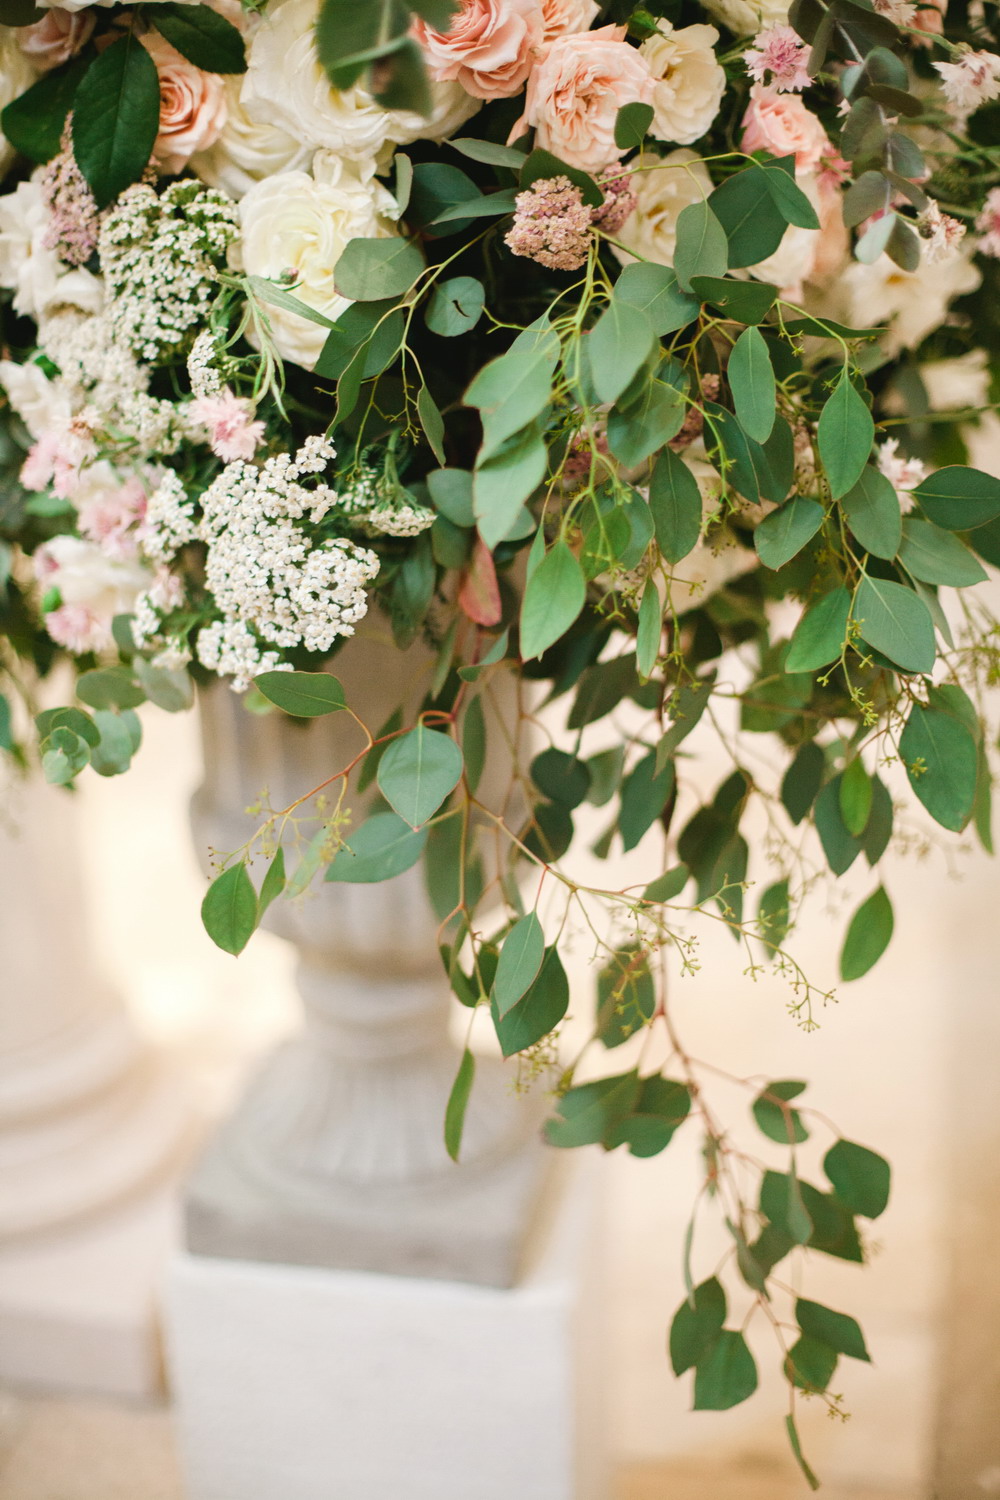 Vaso di fiori per decorazione Chiesa matrimonio